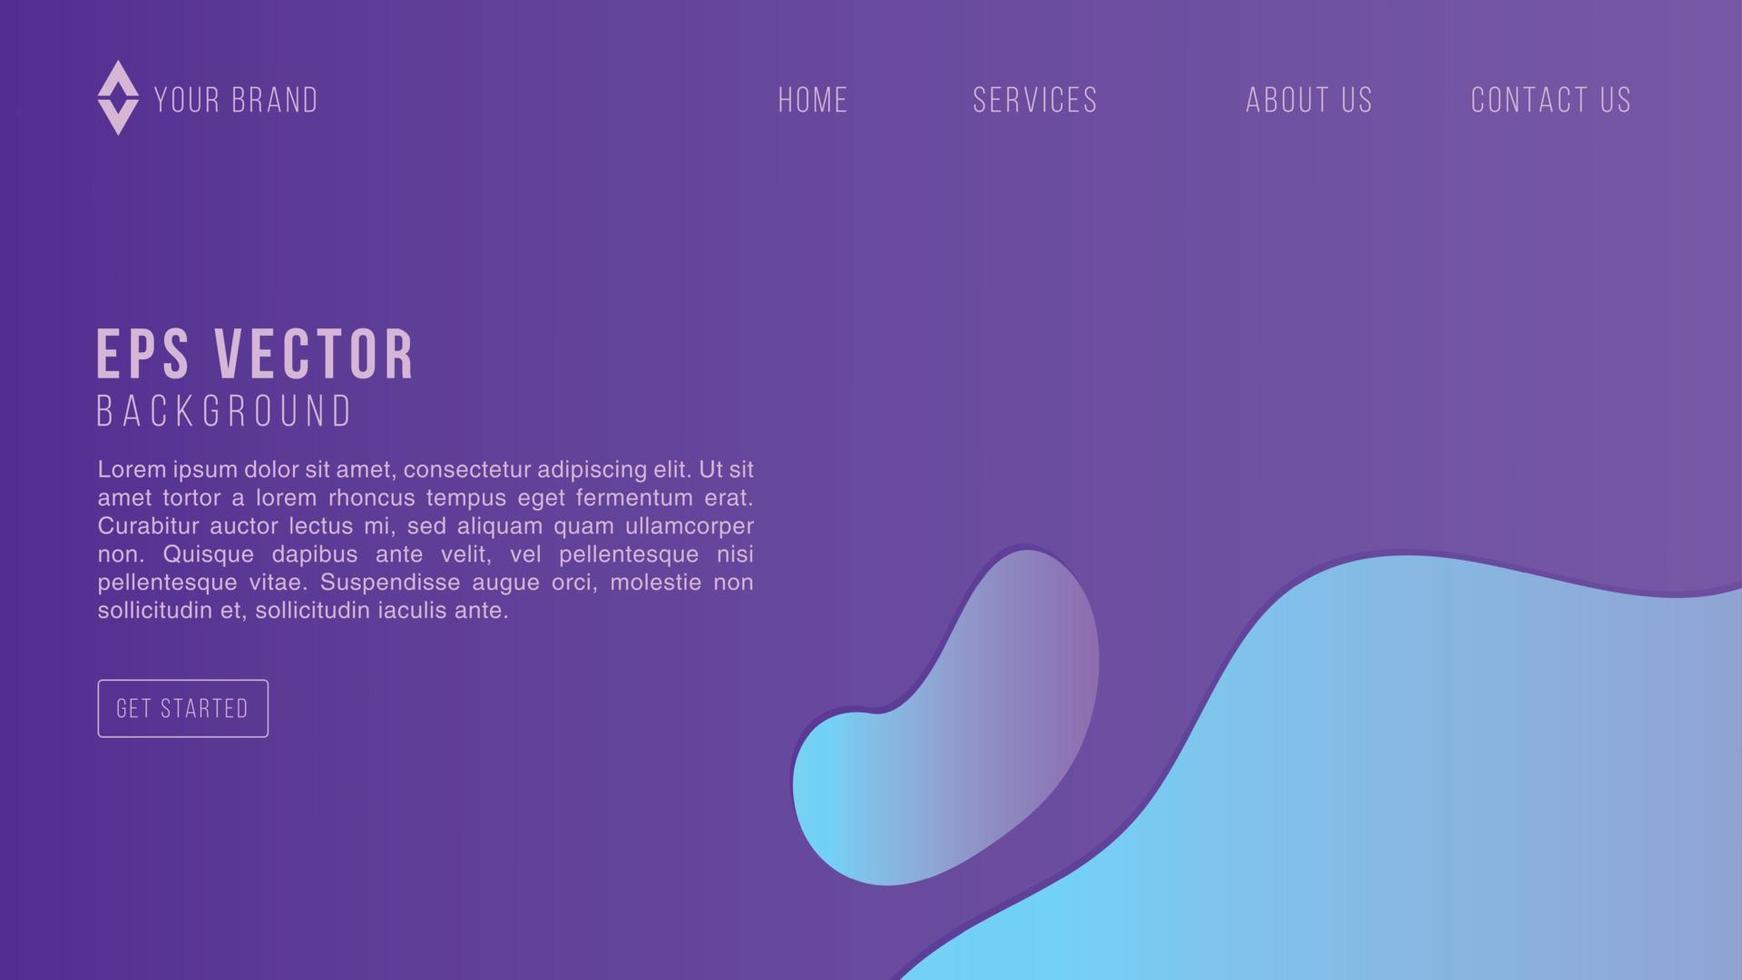 bleu violet dégradé web design abstrait eps 10 vecteur pour site web, page de destination, page d'accueil, page web